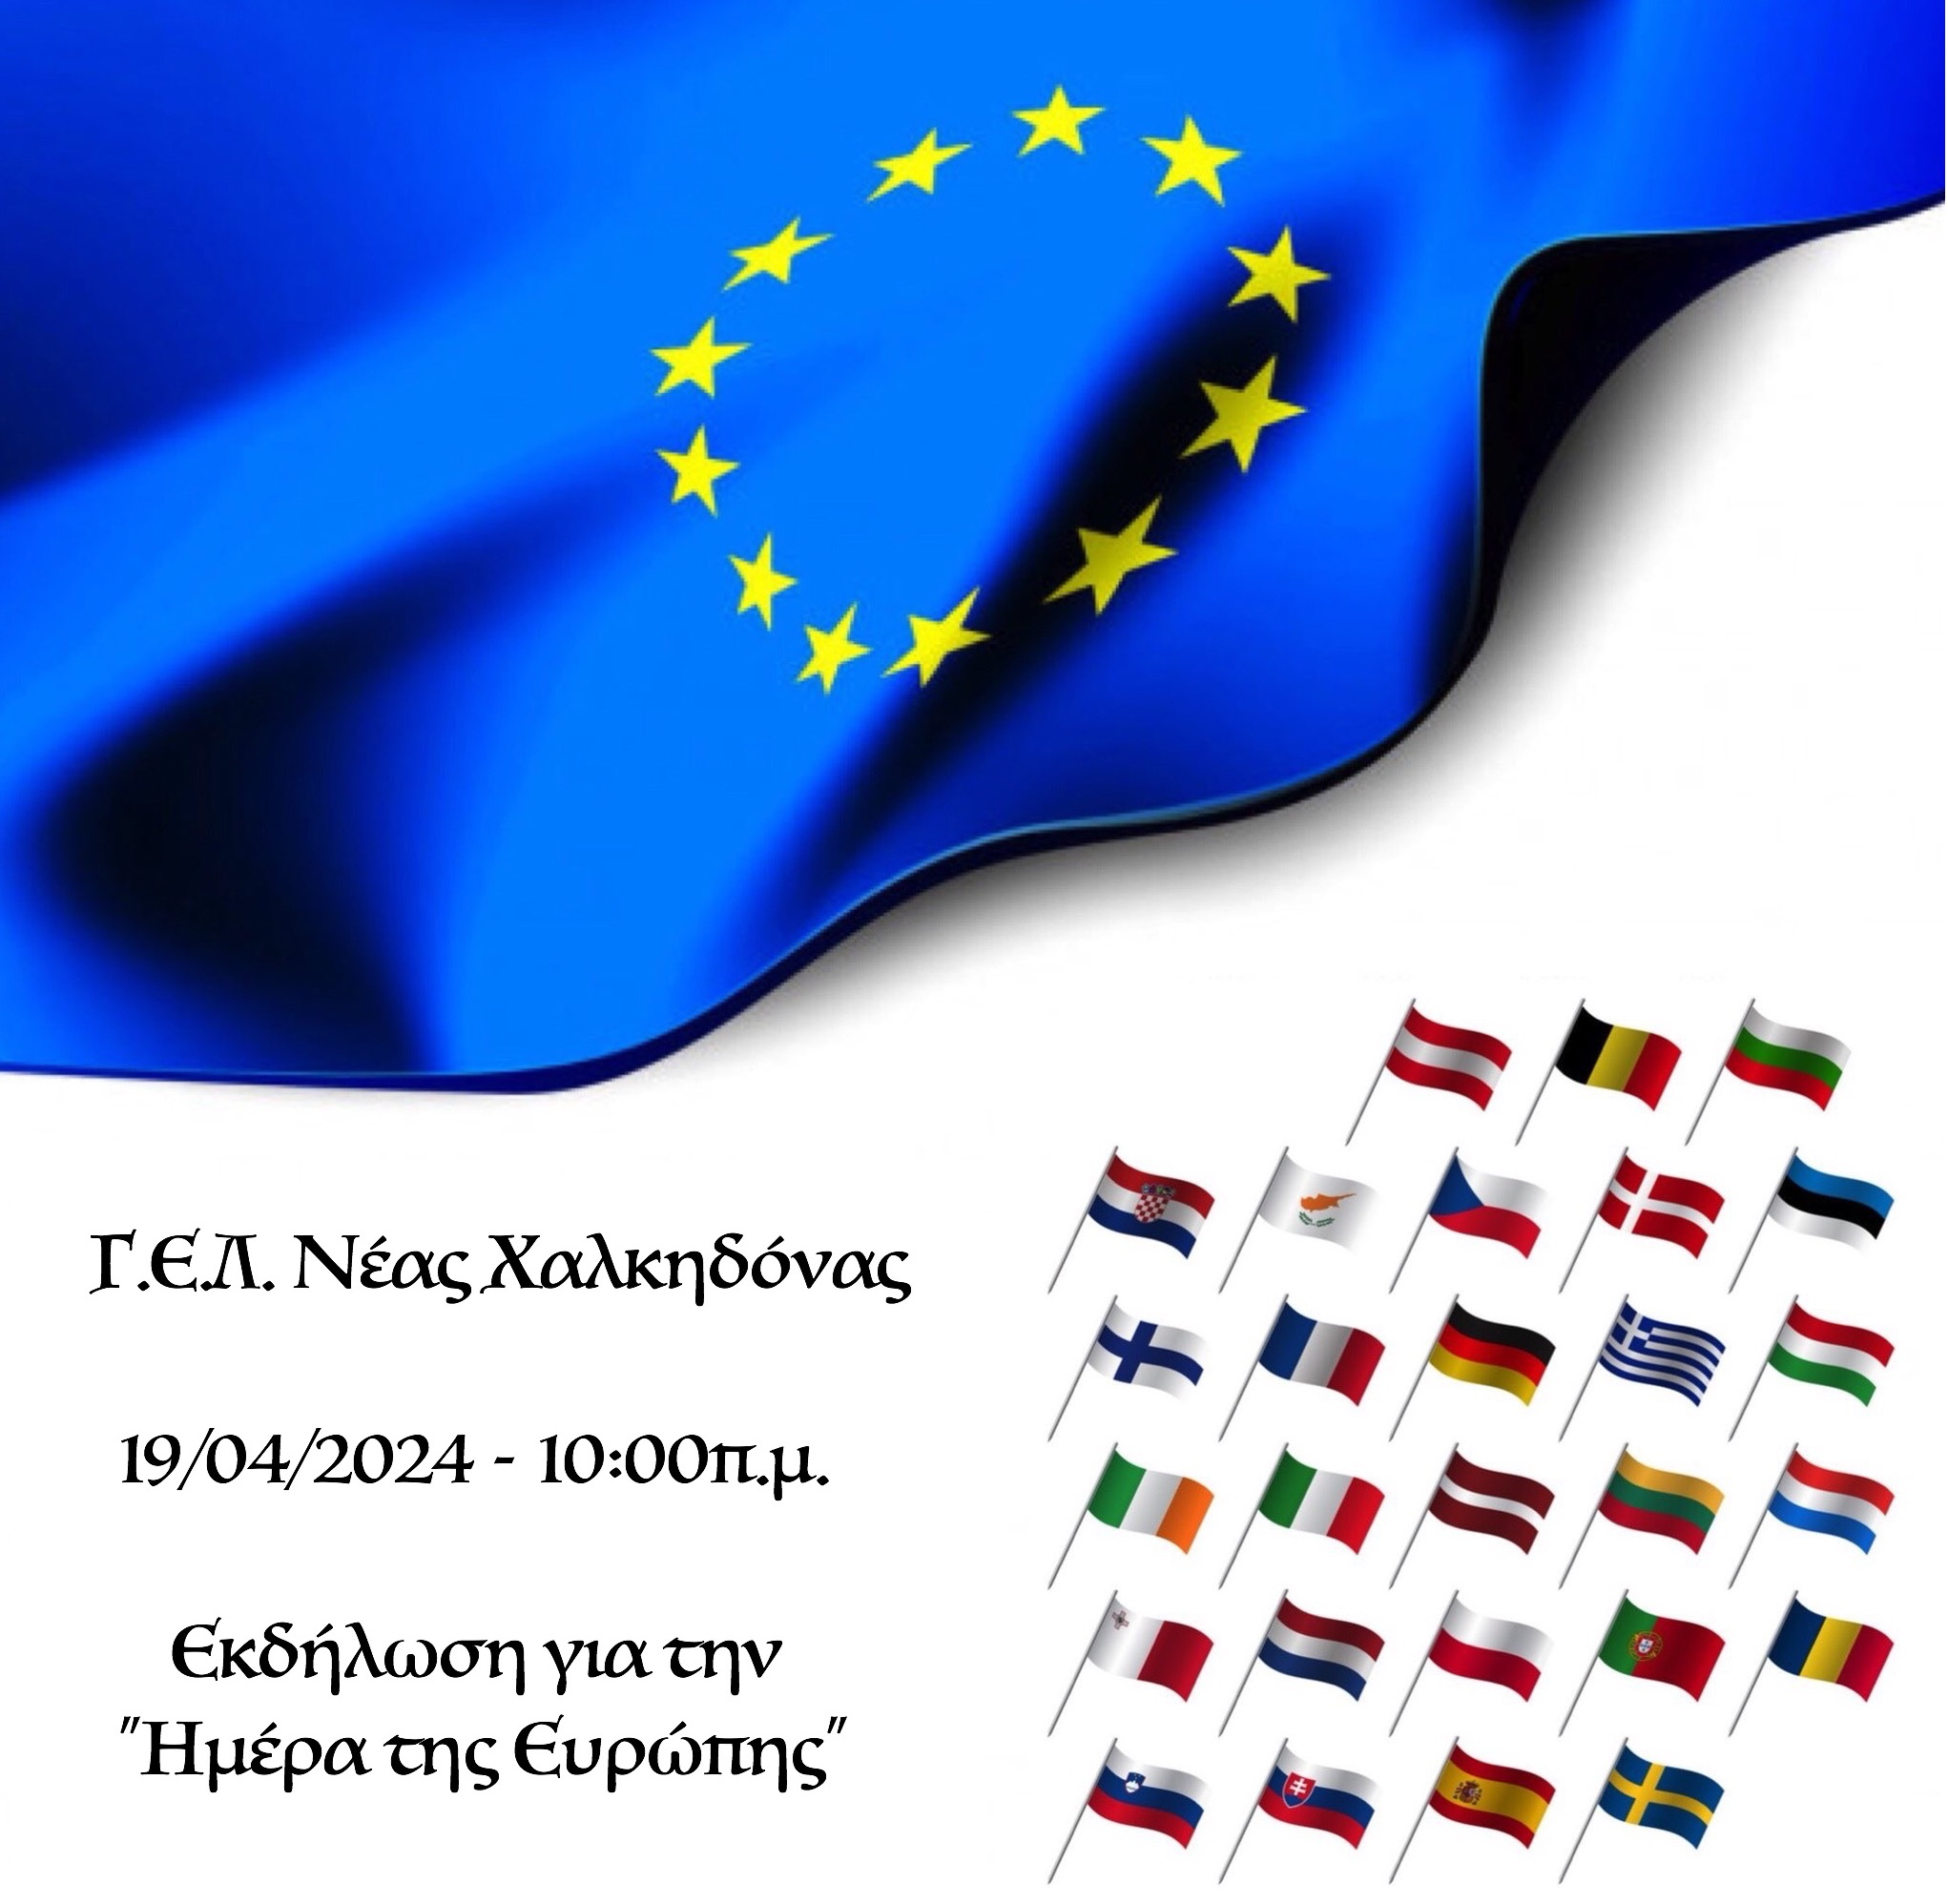 19/04/2024 - Εκδήλωση για την &quot;Ημέρα της Ευρώπης&quot;...